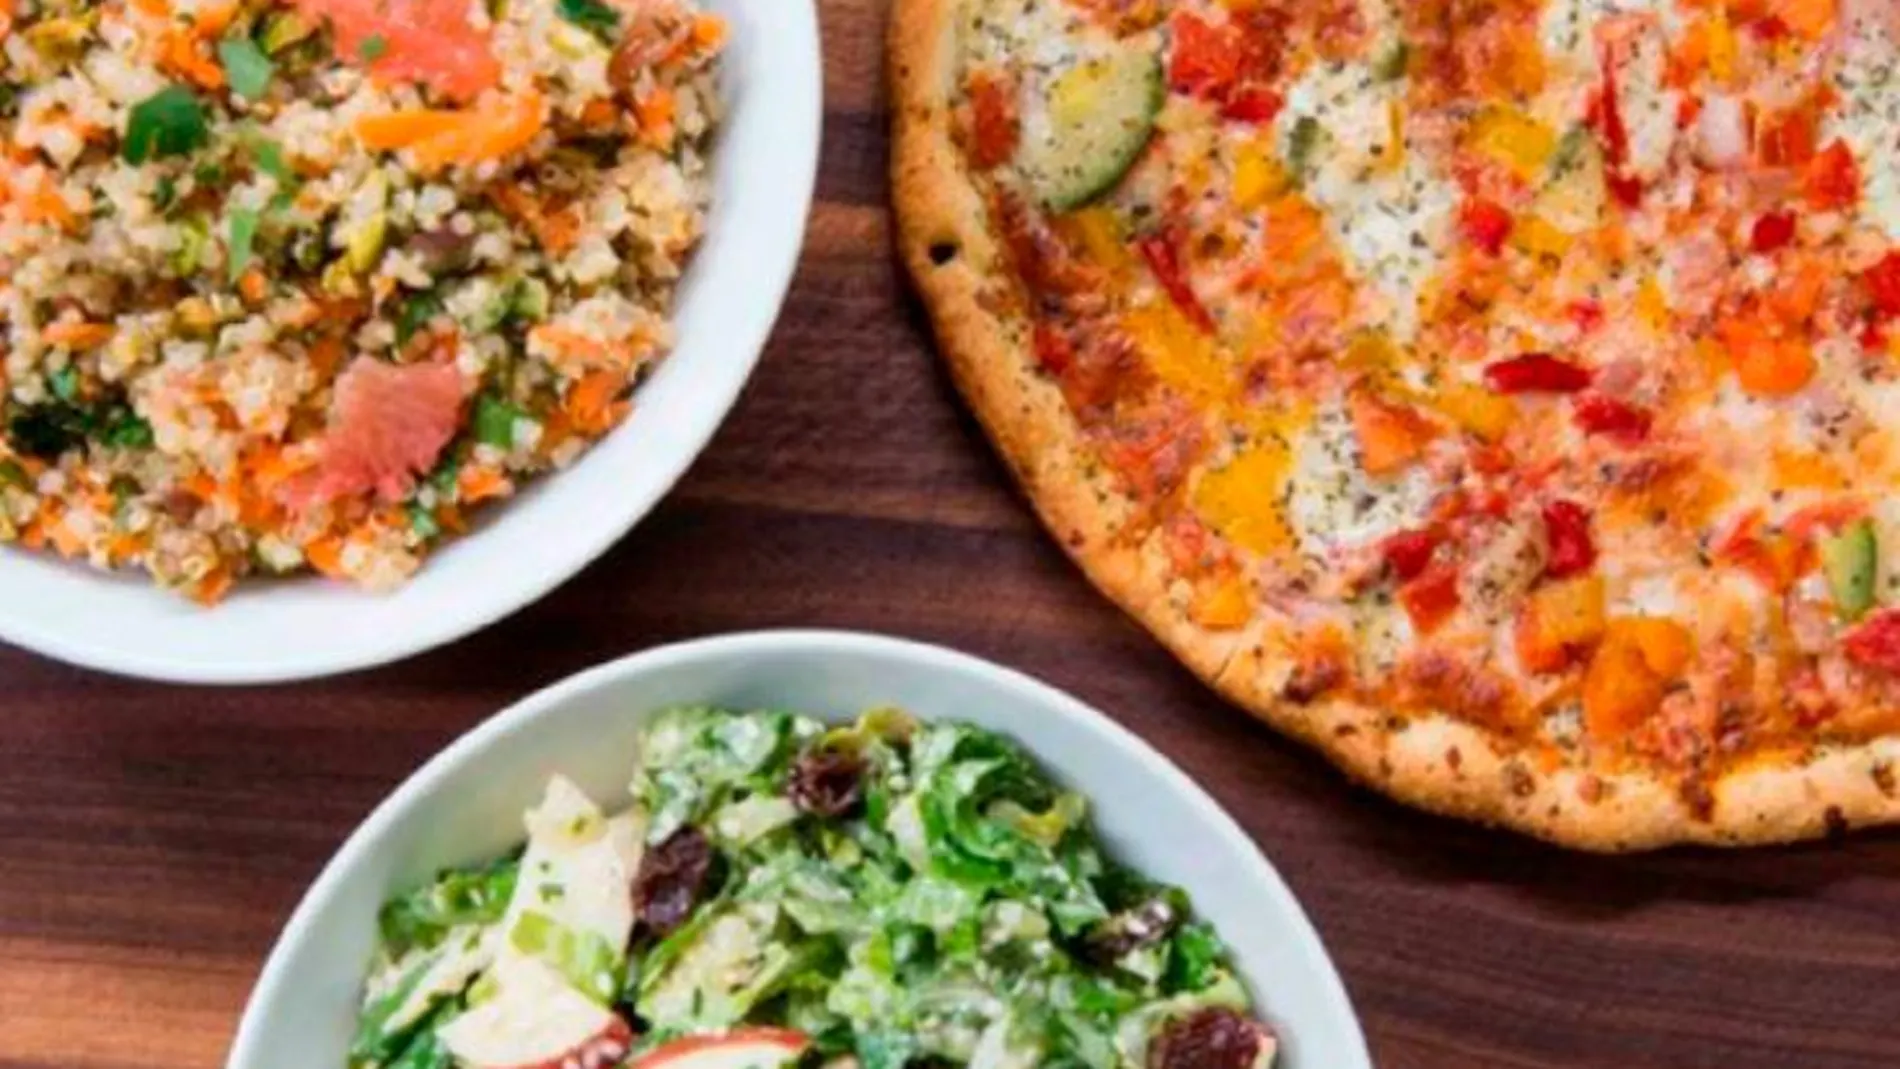 Dentro del ránking de los 15 platos más consumidos en los hogares, la pizza aparece en segundo lugar justo por debajo de la ensalada verde.